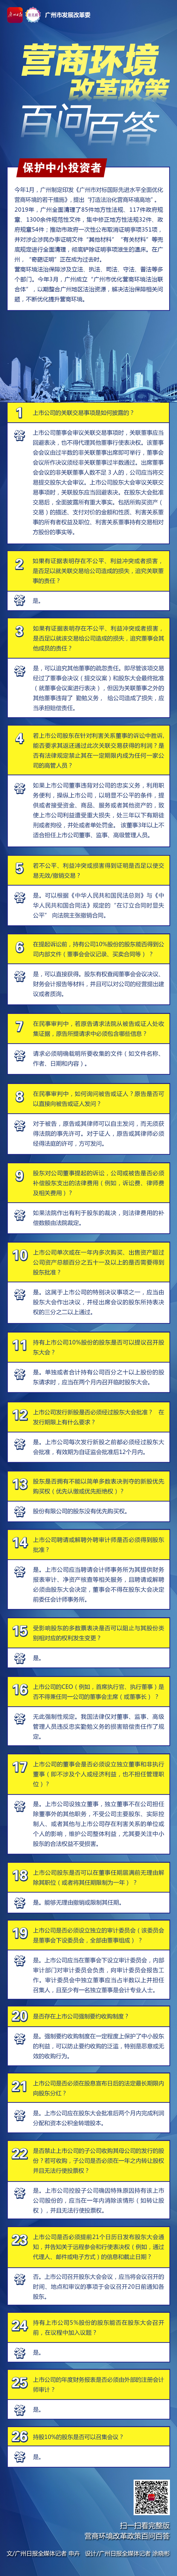 广州营商一图读懂-8保护中小投资者-广州日报.jpg